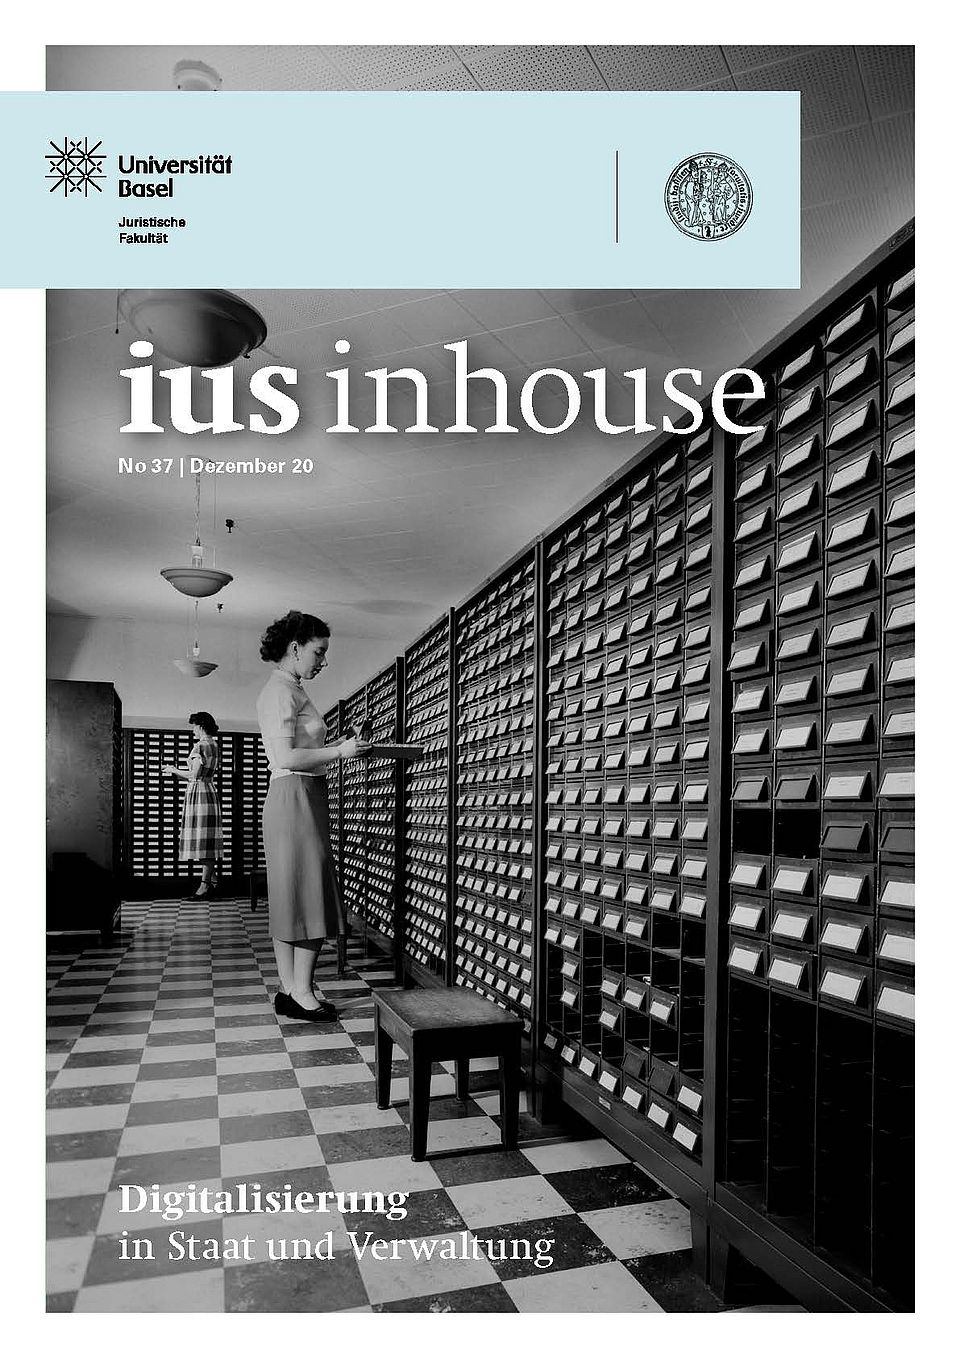 IUS Inhouse Issue No. 37